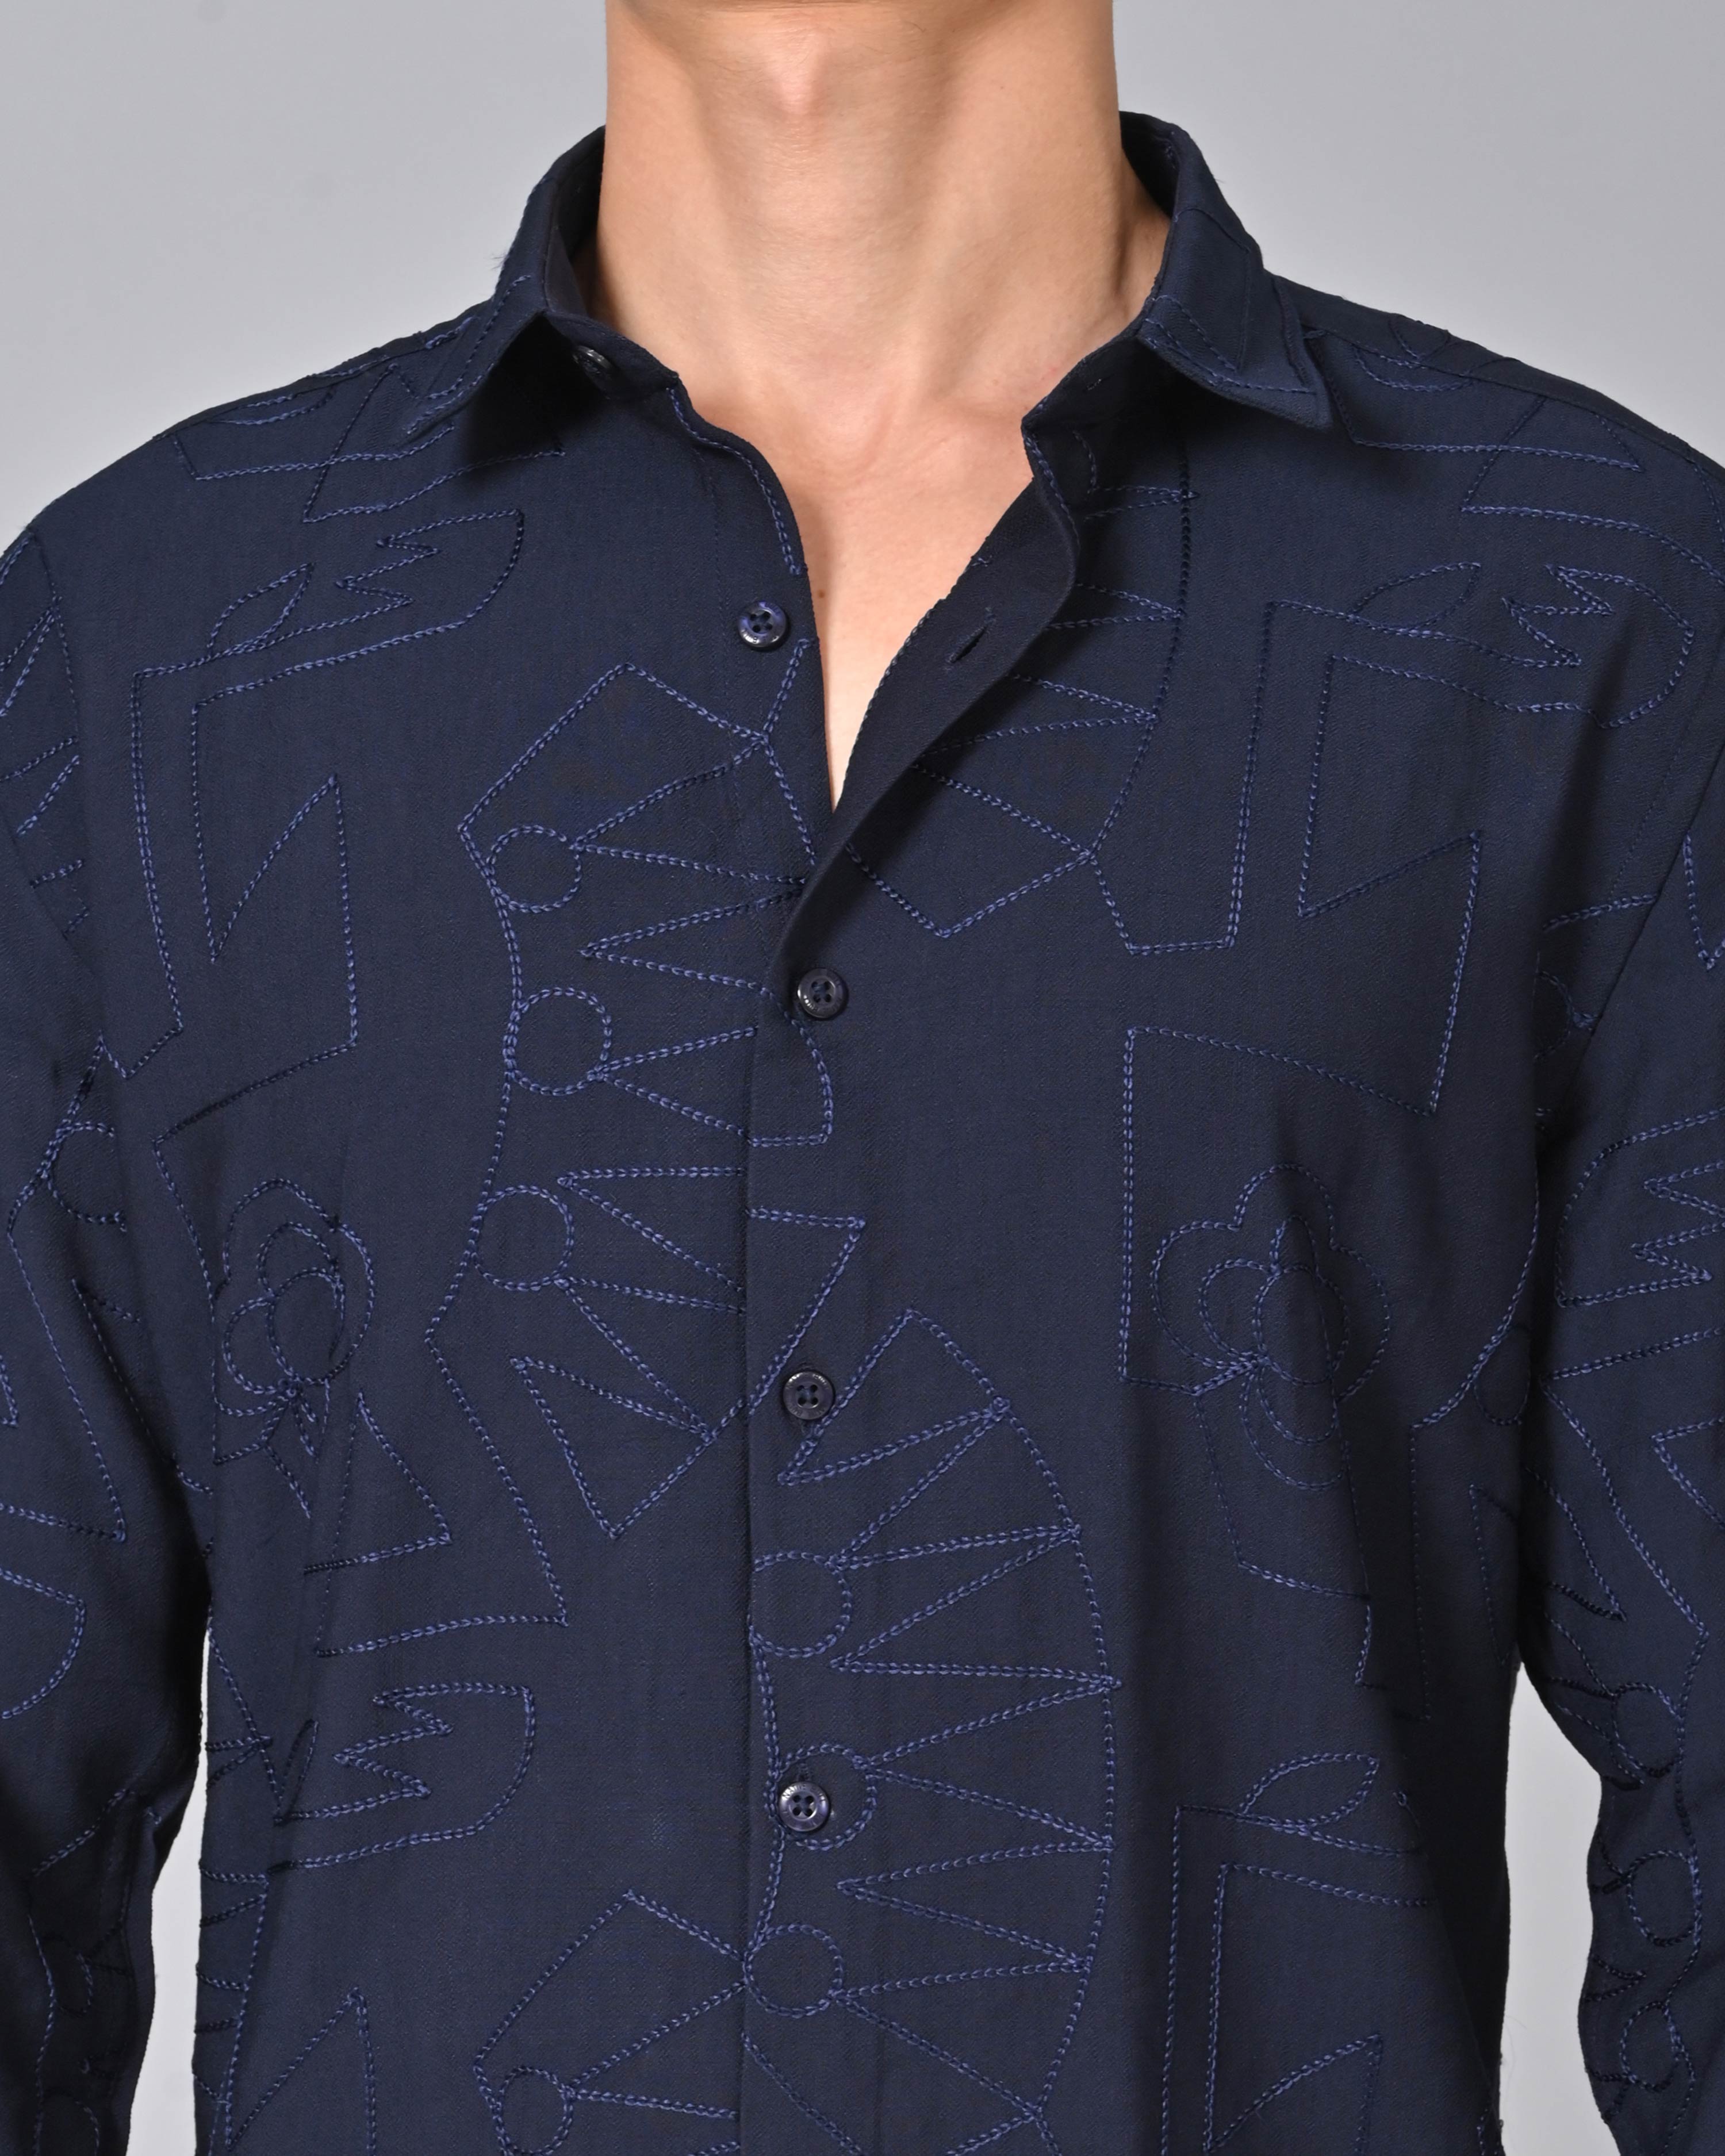 Shop Men's Embroidered Dark Blue Shirt Online